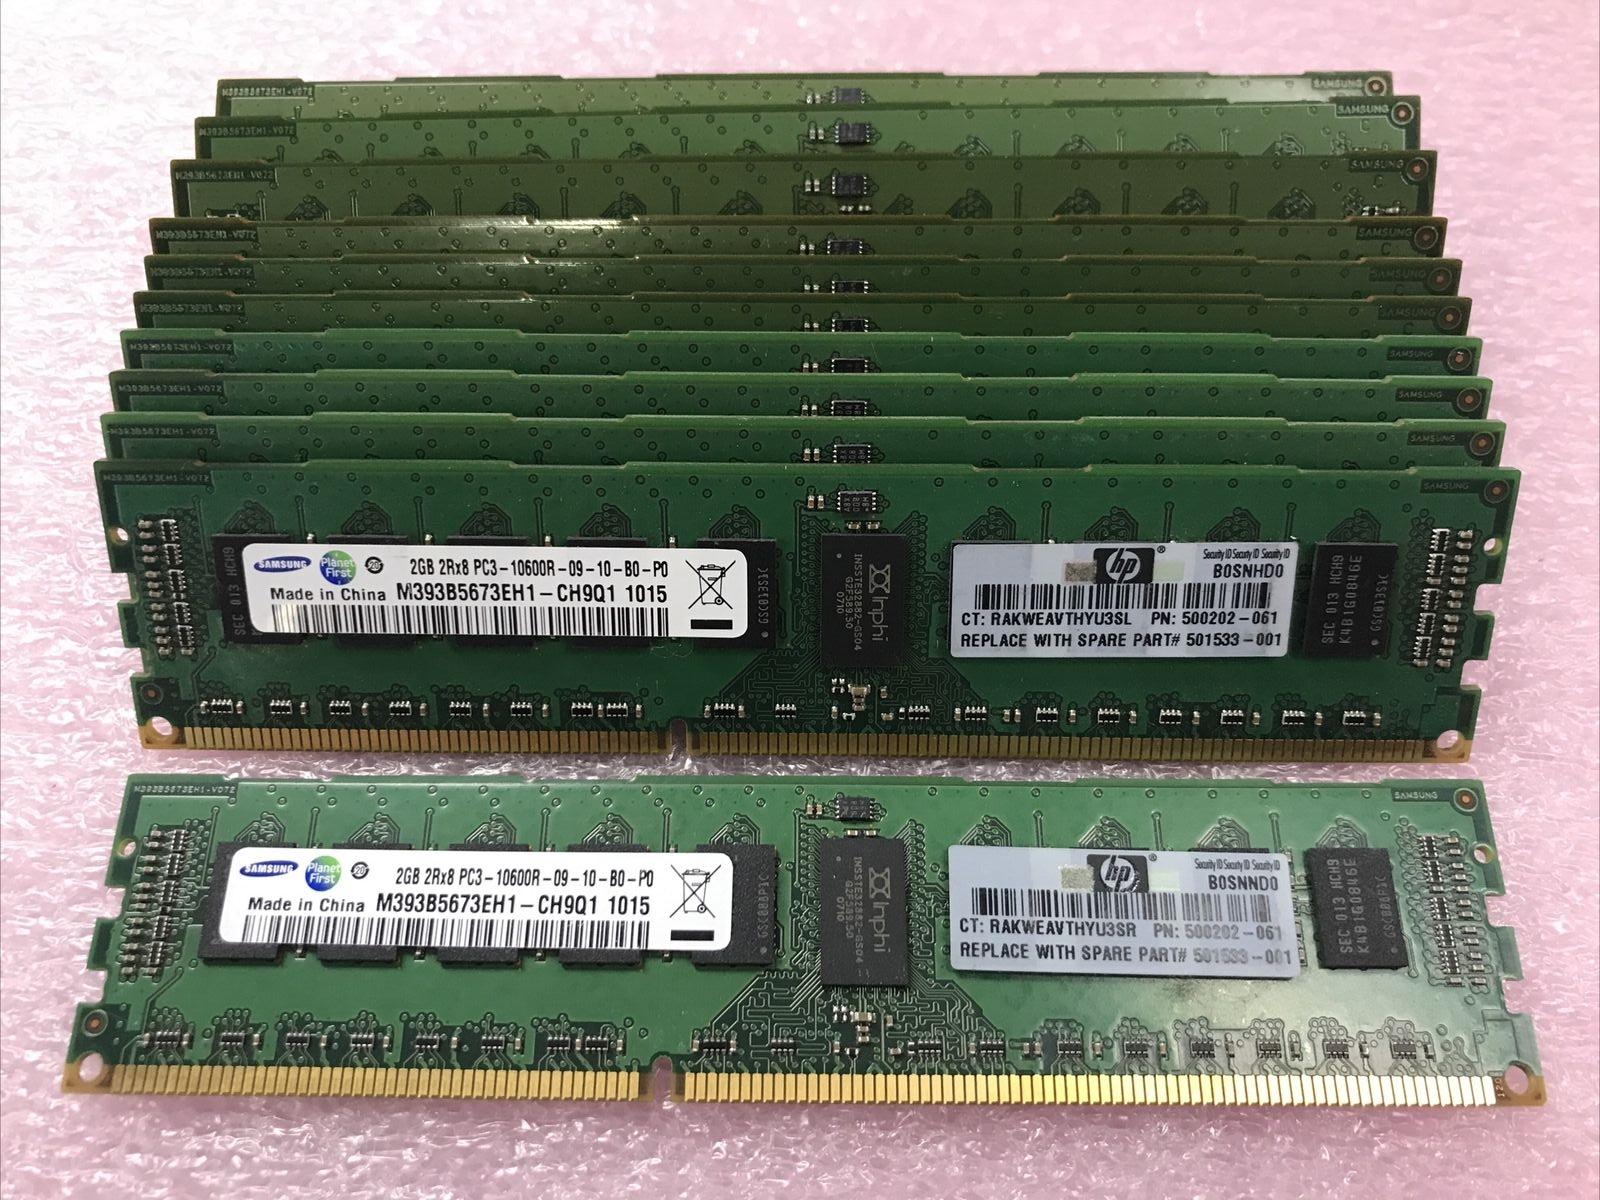 Samsung 30GB Kit 15x2GB PC3-10600R-09-10-B0-P0 DDR3 Server RAM M393B5673EH1